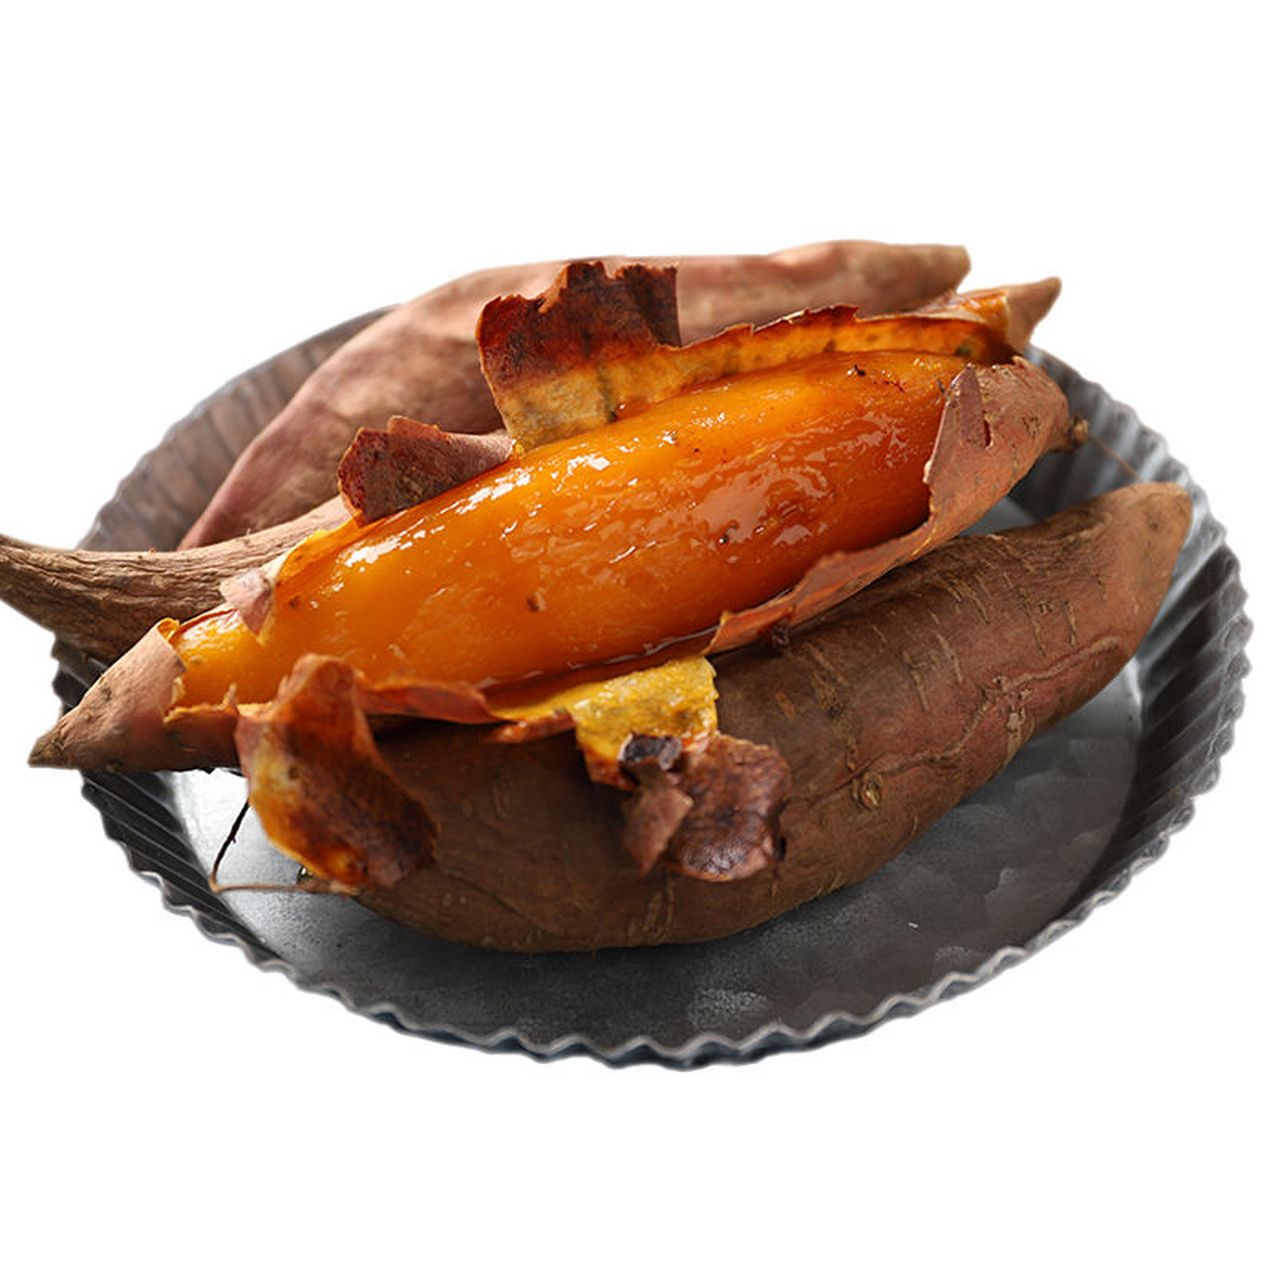 山东烟薯,烤着吃,会流蜜的红薯